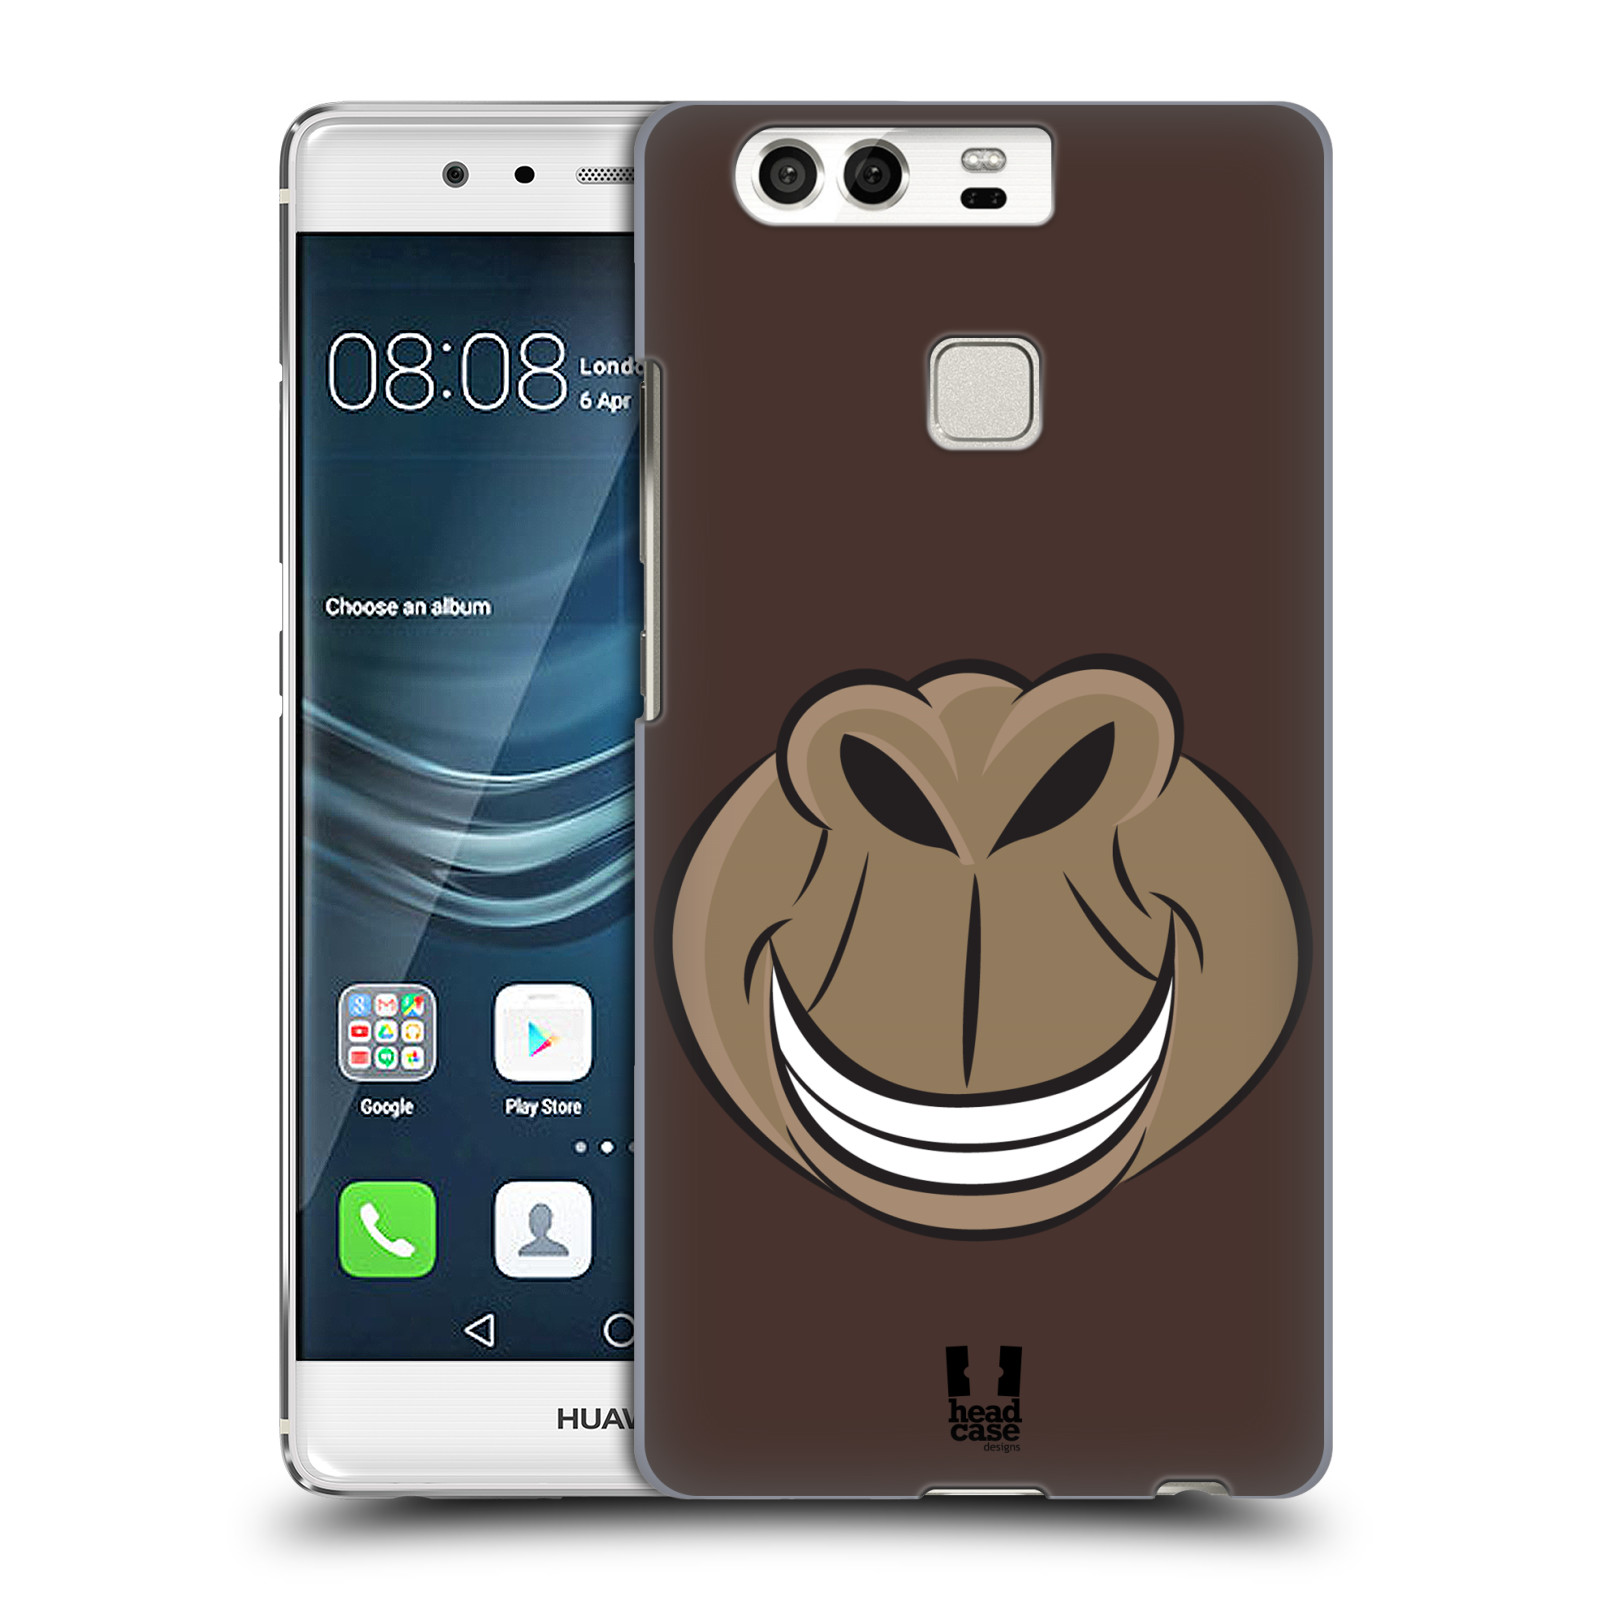 HEAD CASE plastový obal na mobil Huawei P9 / P9 DUAL SIM vzor Zvířecí úsměv opice hnědá